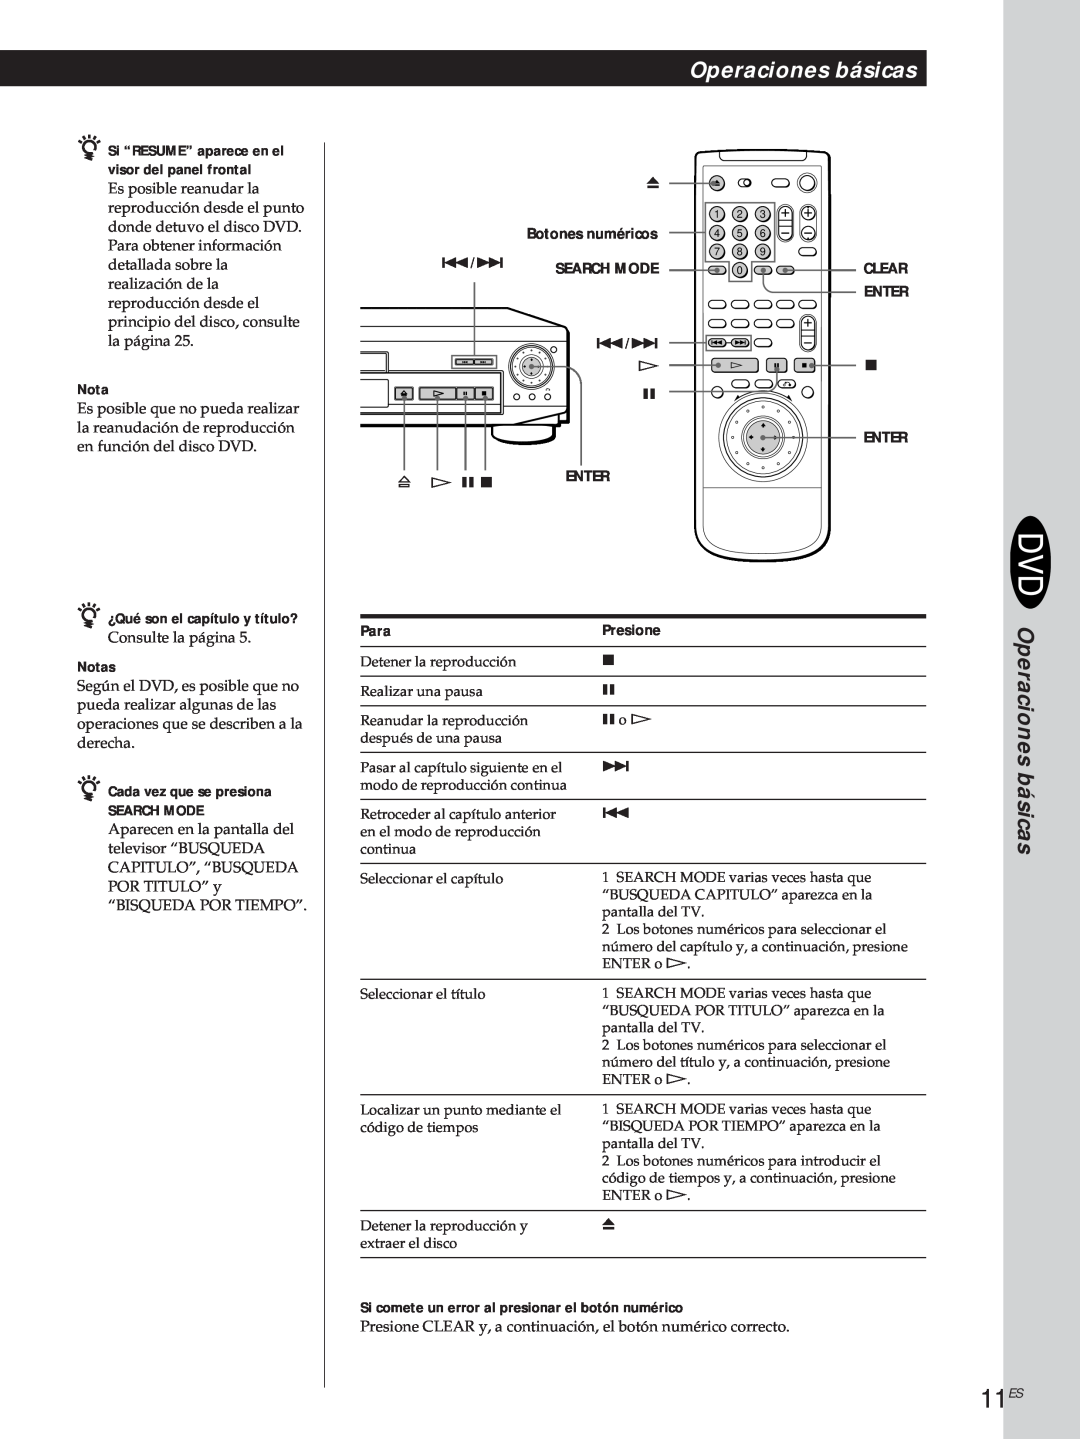 Sony DVP-S500D 11ES, Operaciones básicas, Para, Presione, z Si “RESUME” aparece en el visor del panel frontal, Search Mode 